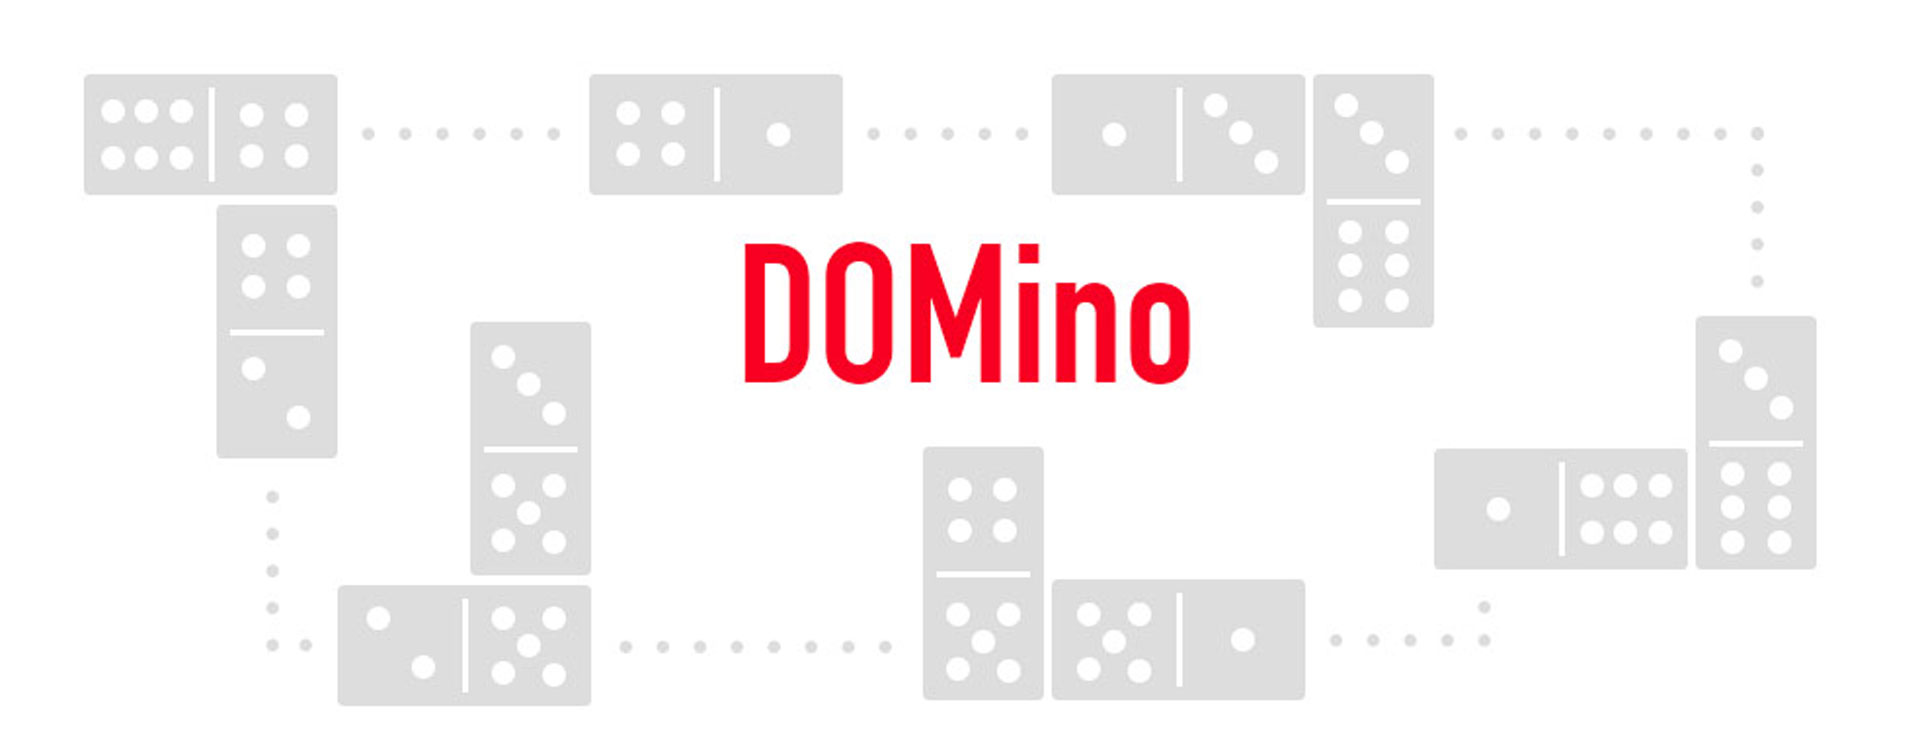 Domino-Aufbau